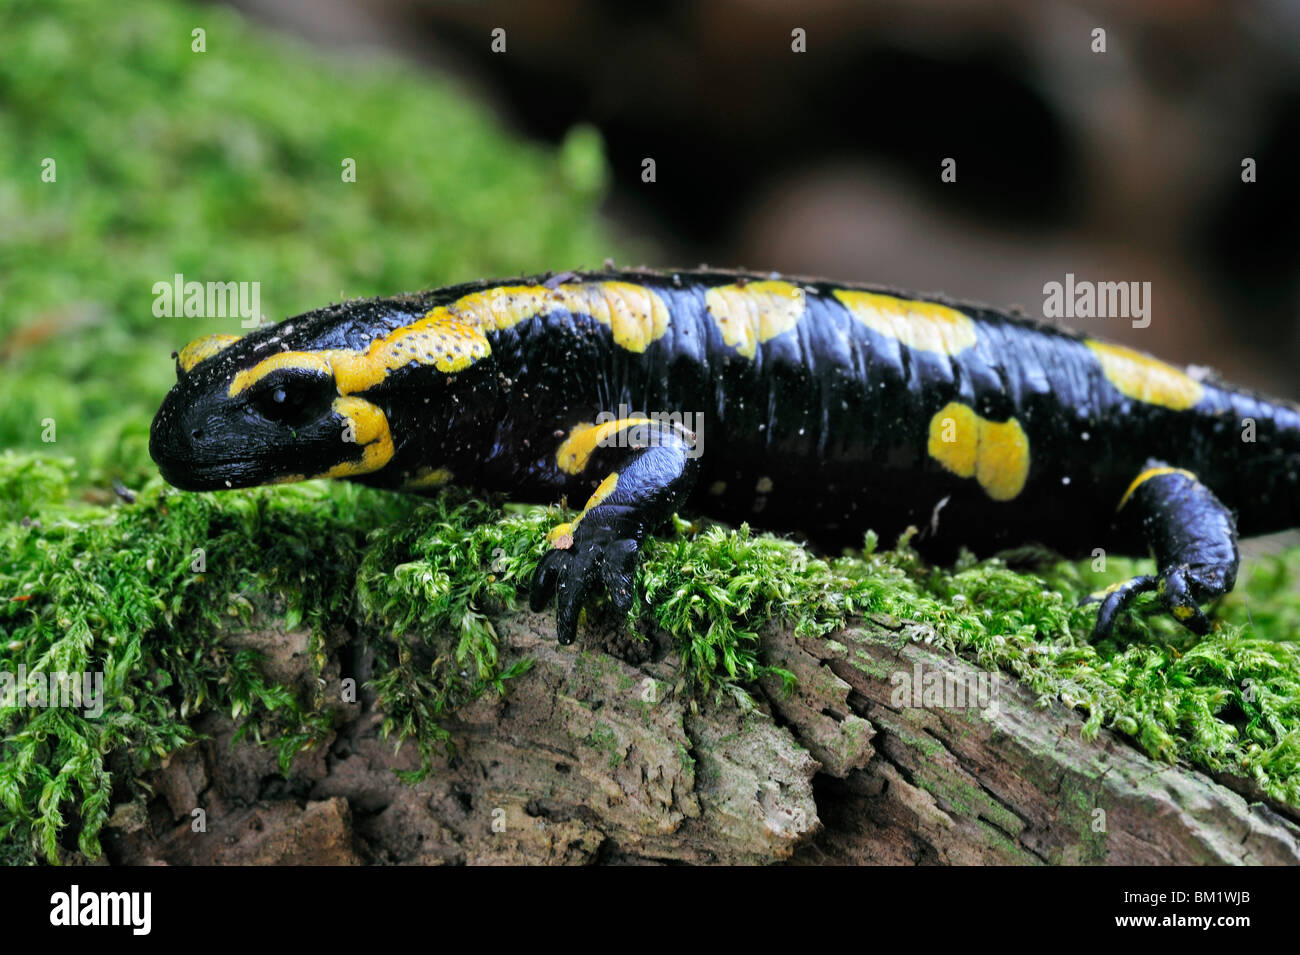 European / Fire salamander (Salamandra salamandra) sur la mousse, Luxembourg Banque D'Images